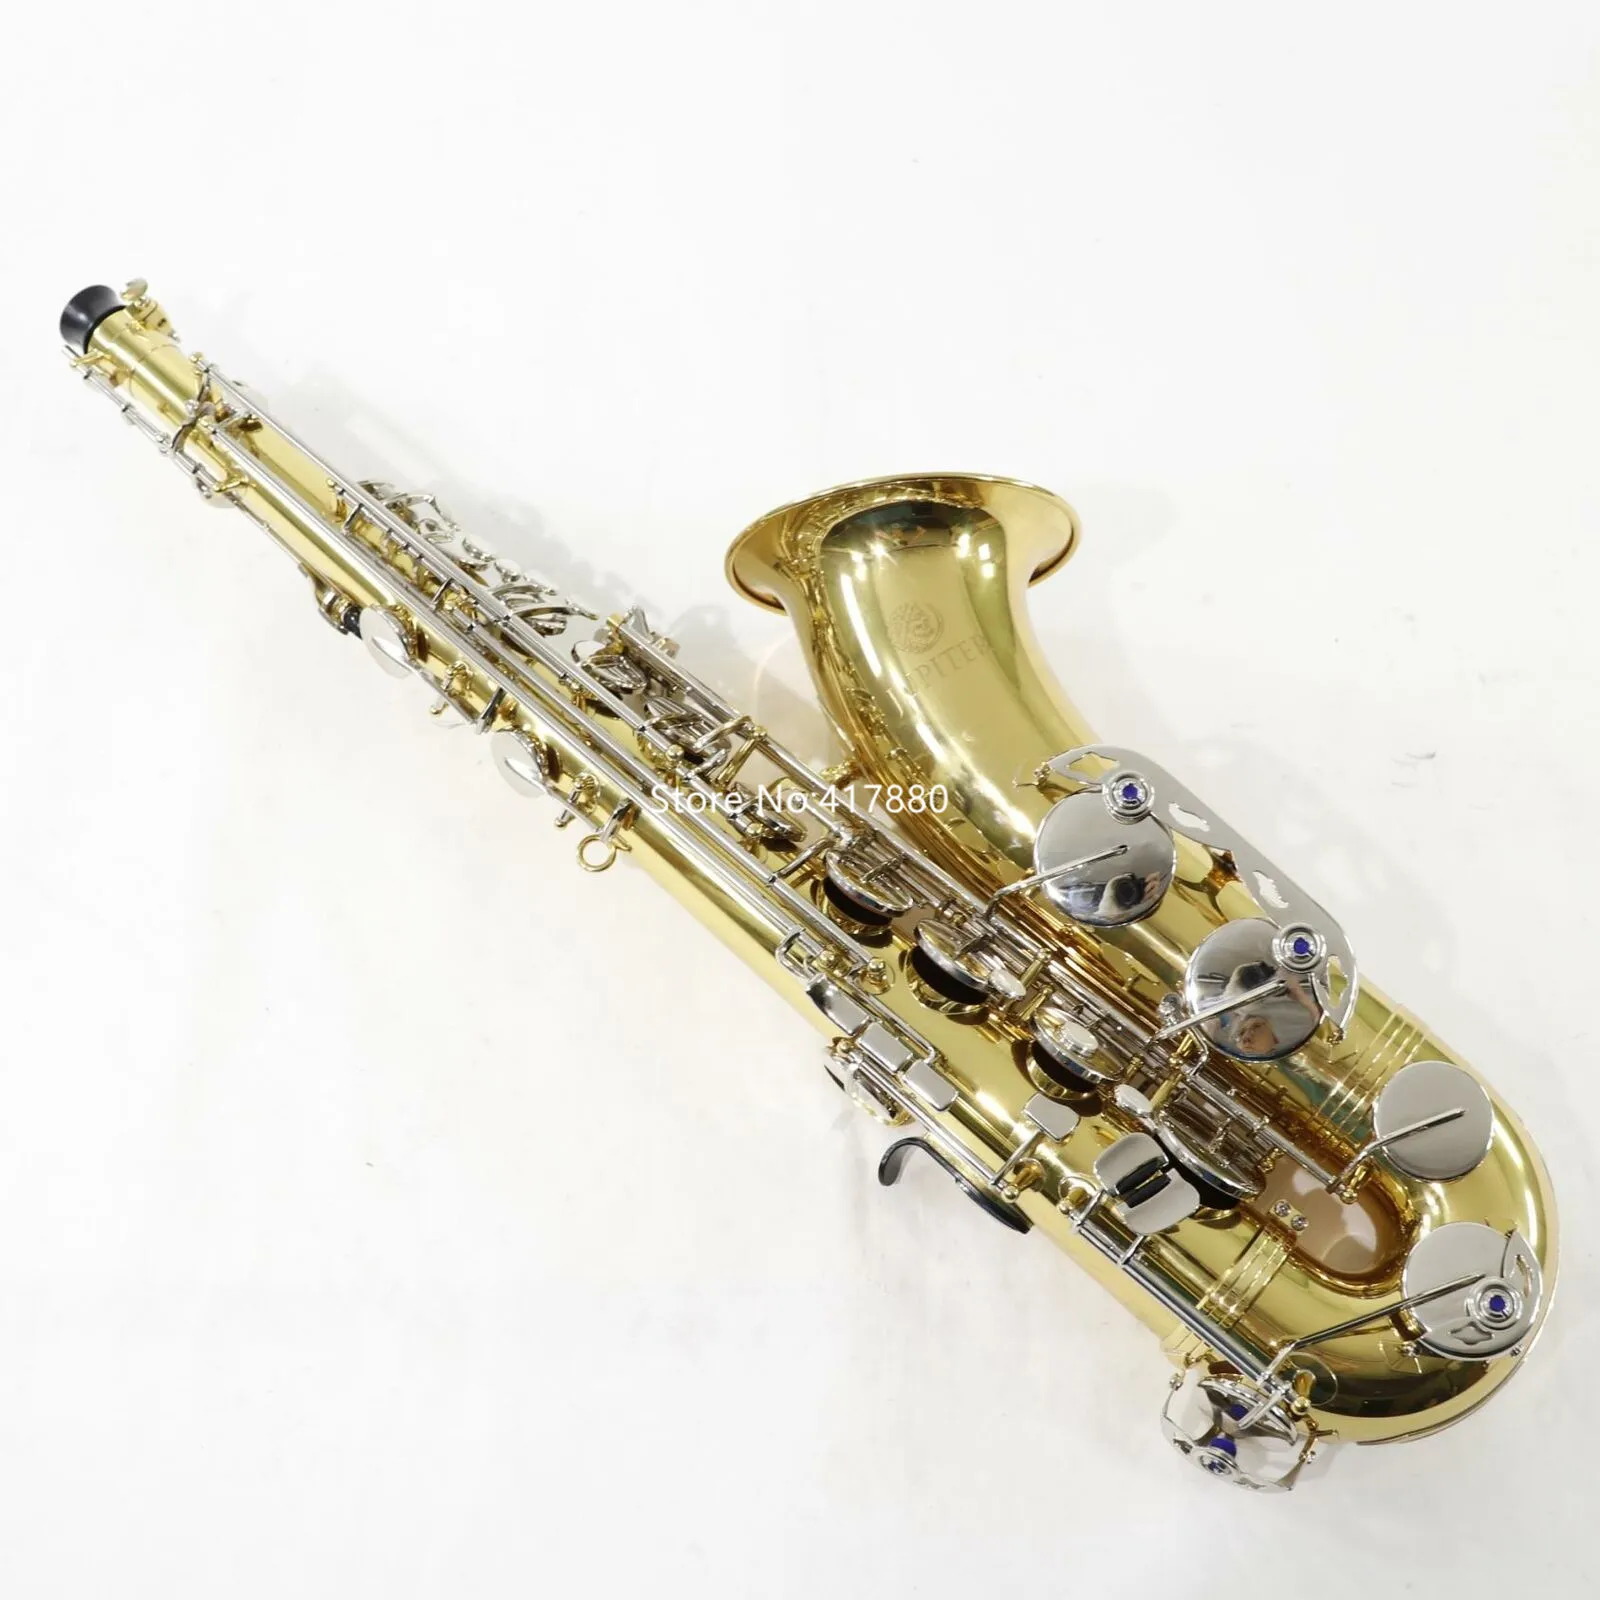 Популярная модель Jupiter Bb Tune модель JTS710GNA студент тенор саксофон латунь Glod музыкальный инструмент профессиональный с футляром